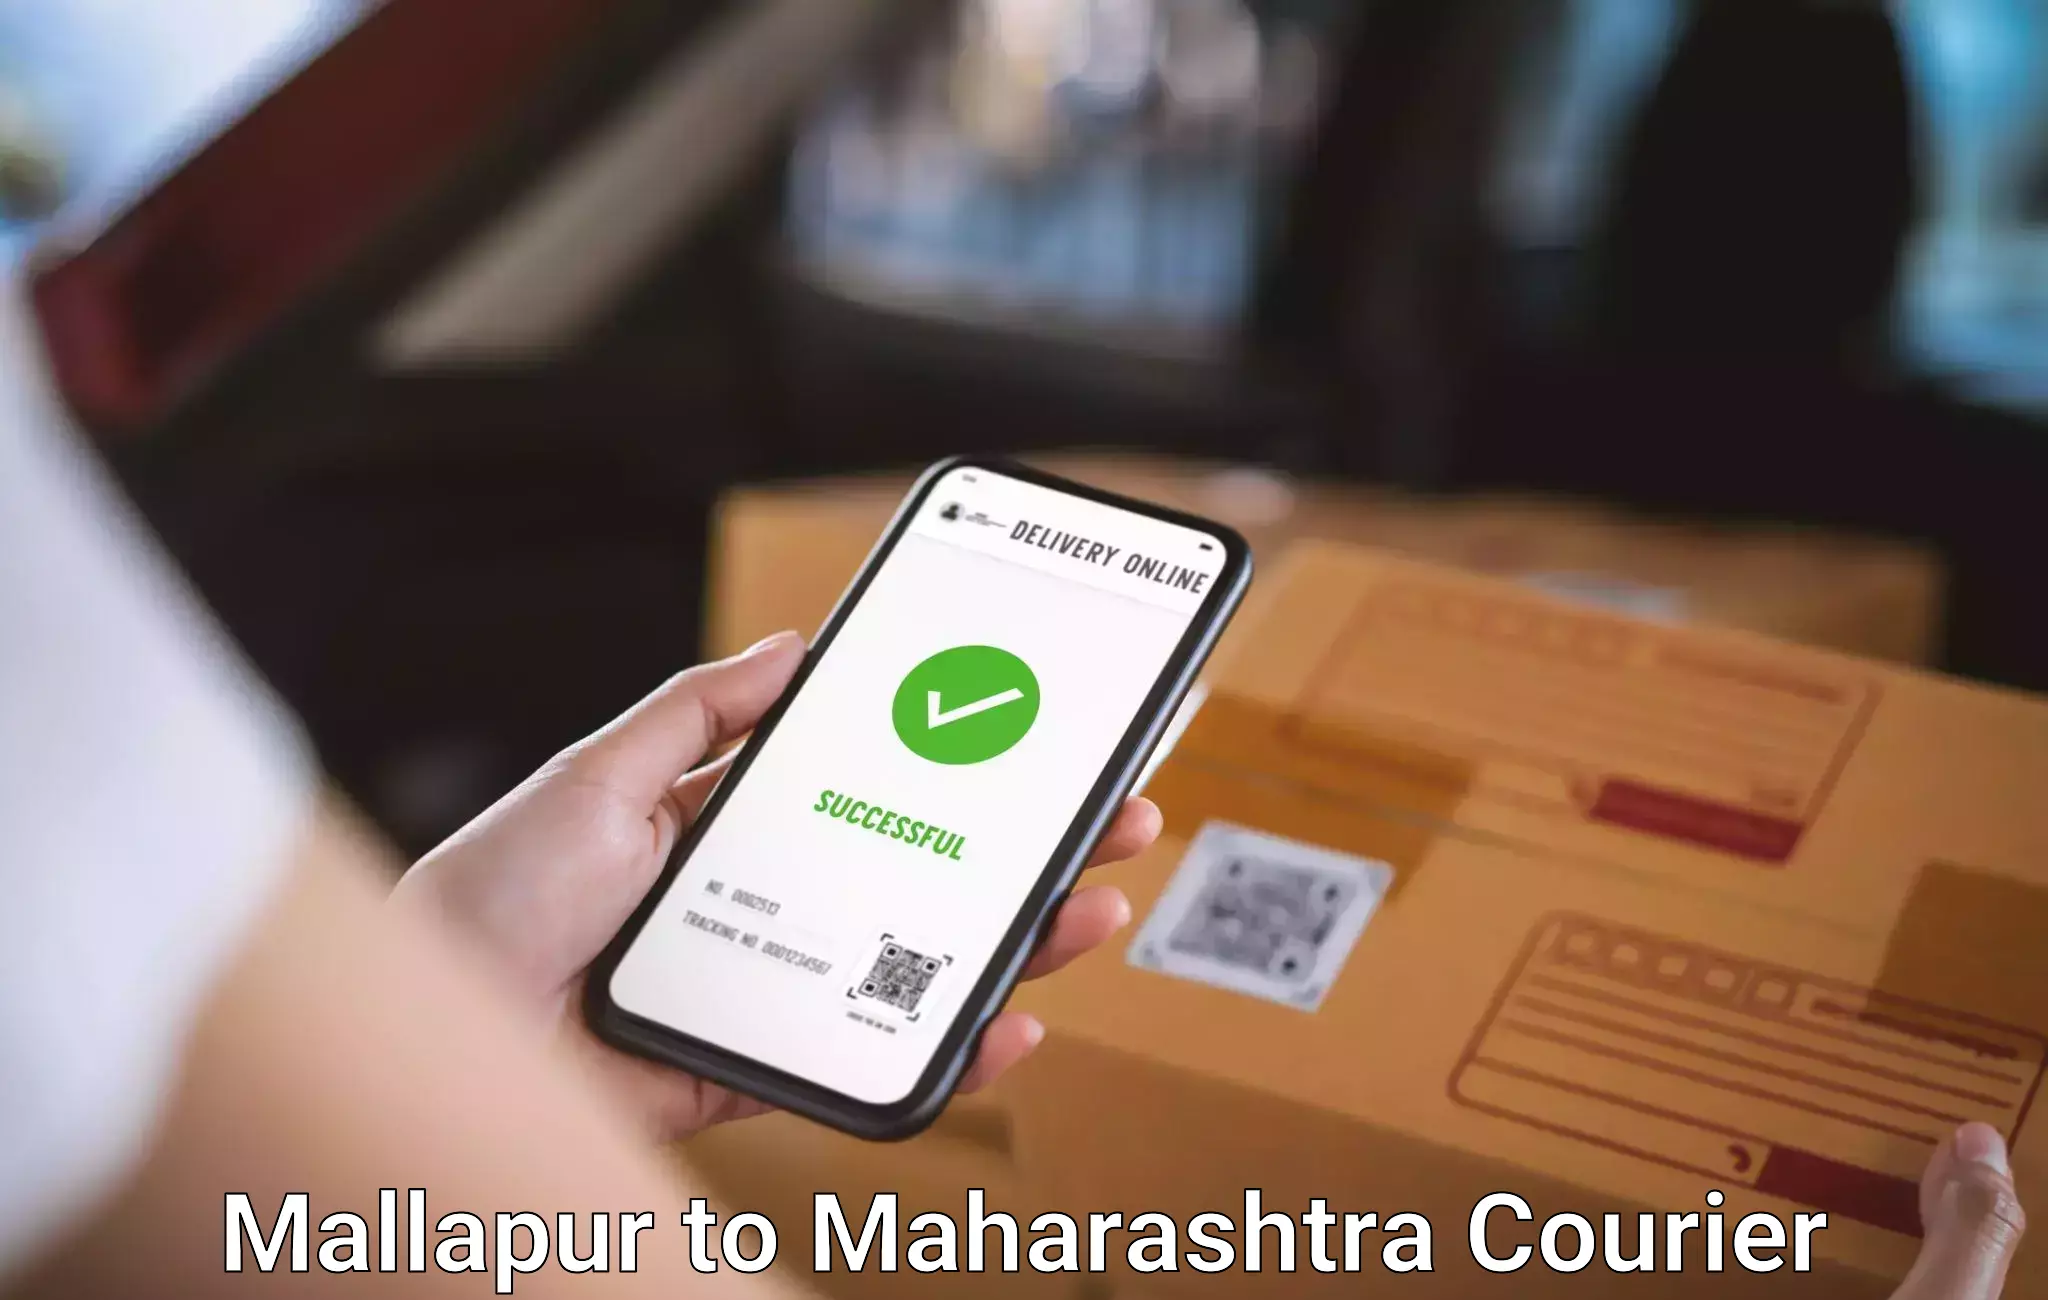 Baggage shipping calculator Mallapur to Maharashtra